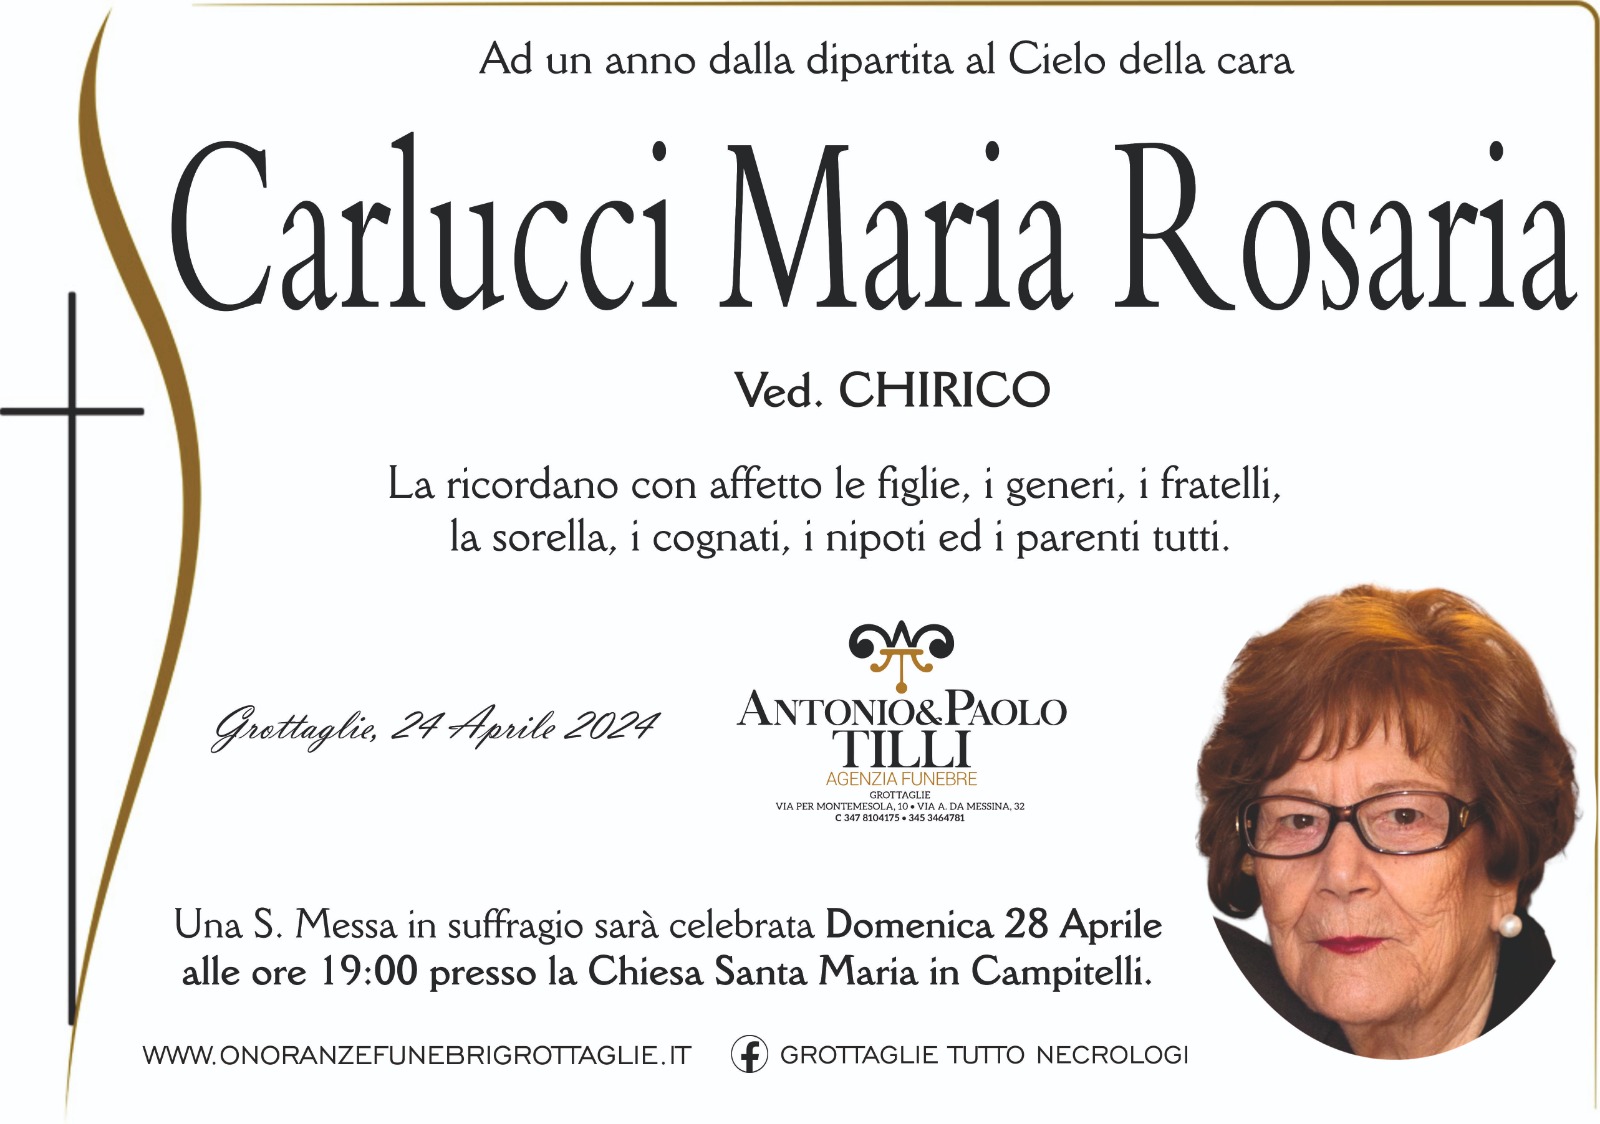 Carlucci Maria Rosaria